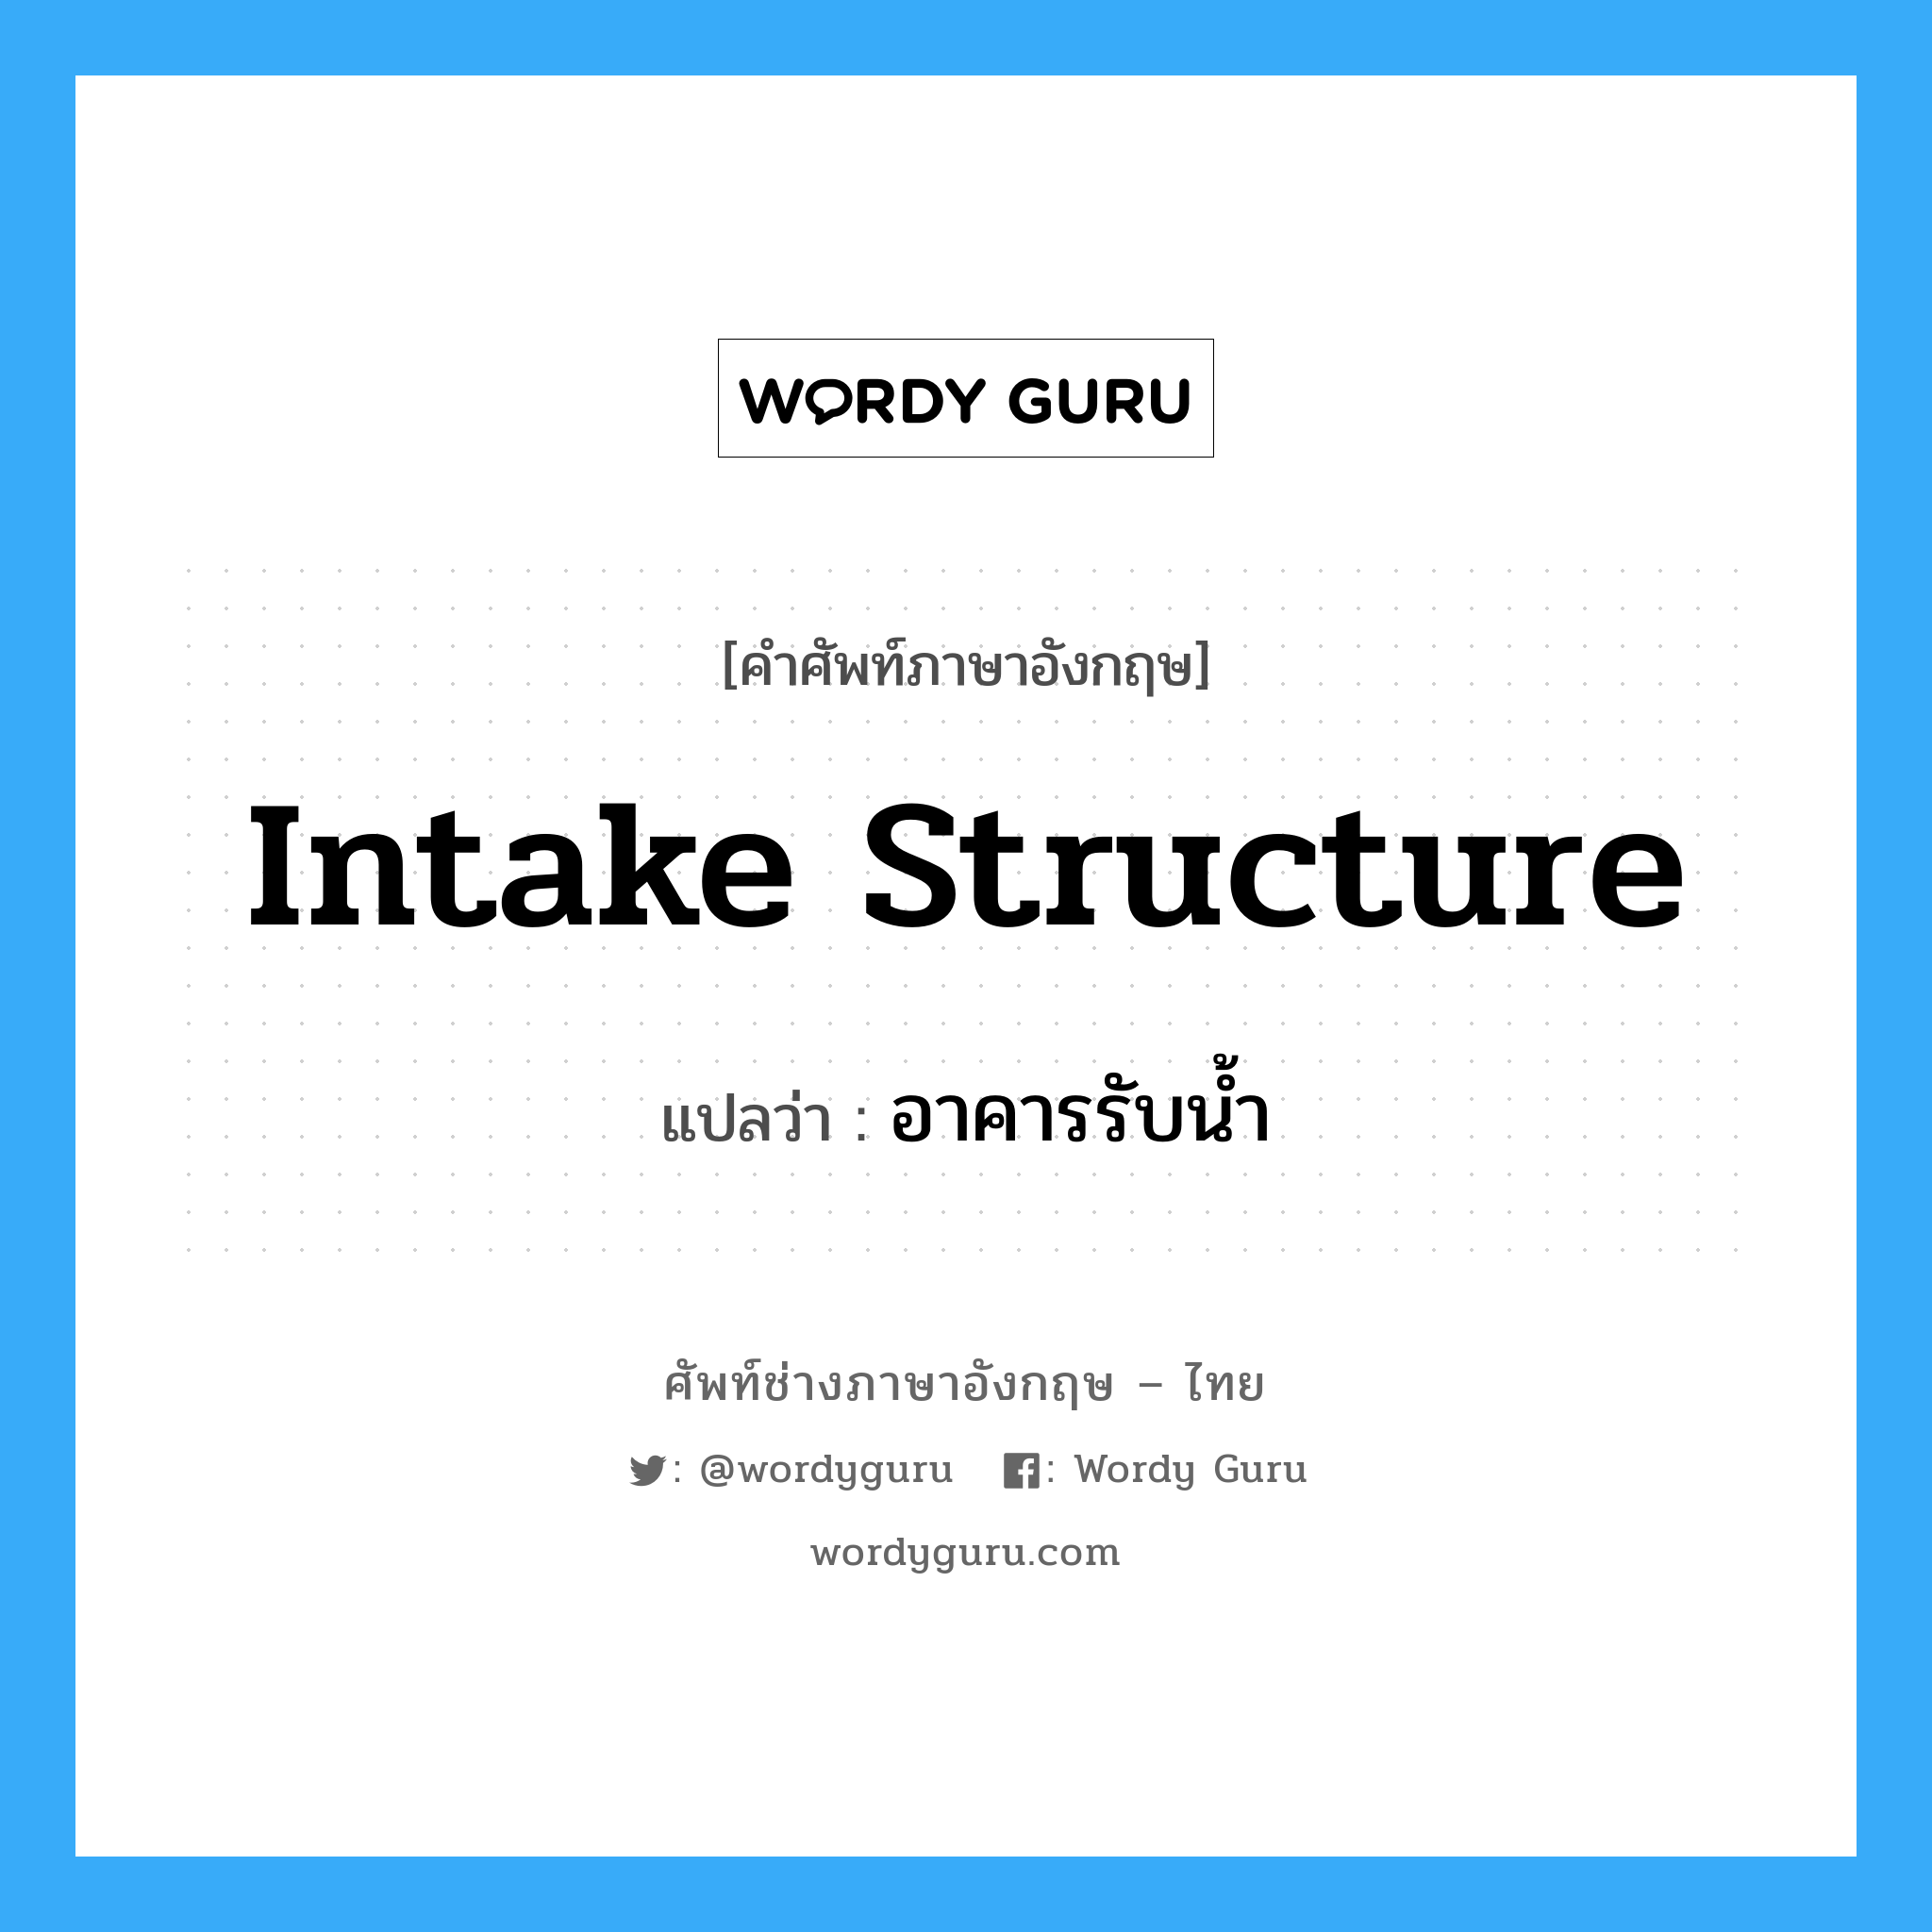 intake structure แปลว่า?, คำศัพท์ช่างภาษาอังกฤษ - ไทย intake structure คำศัพท์ภาษาอังกฤษ intake structure แปลว่า อาคารรับน้ำ